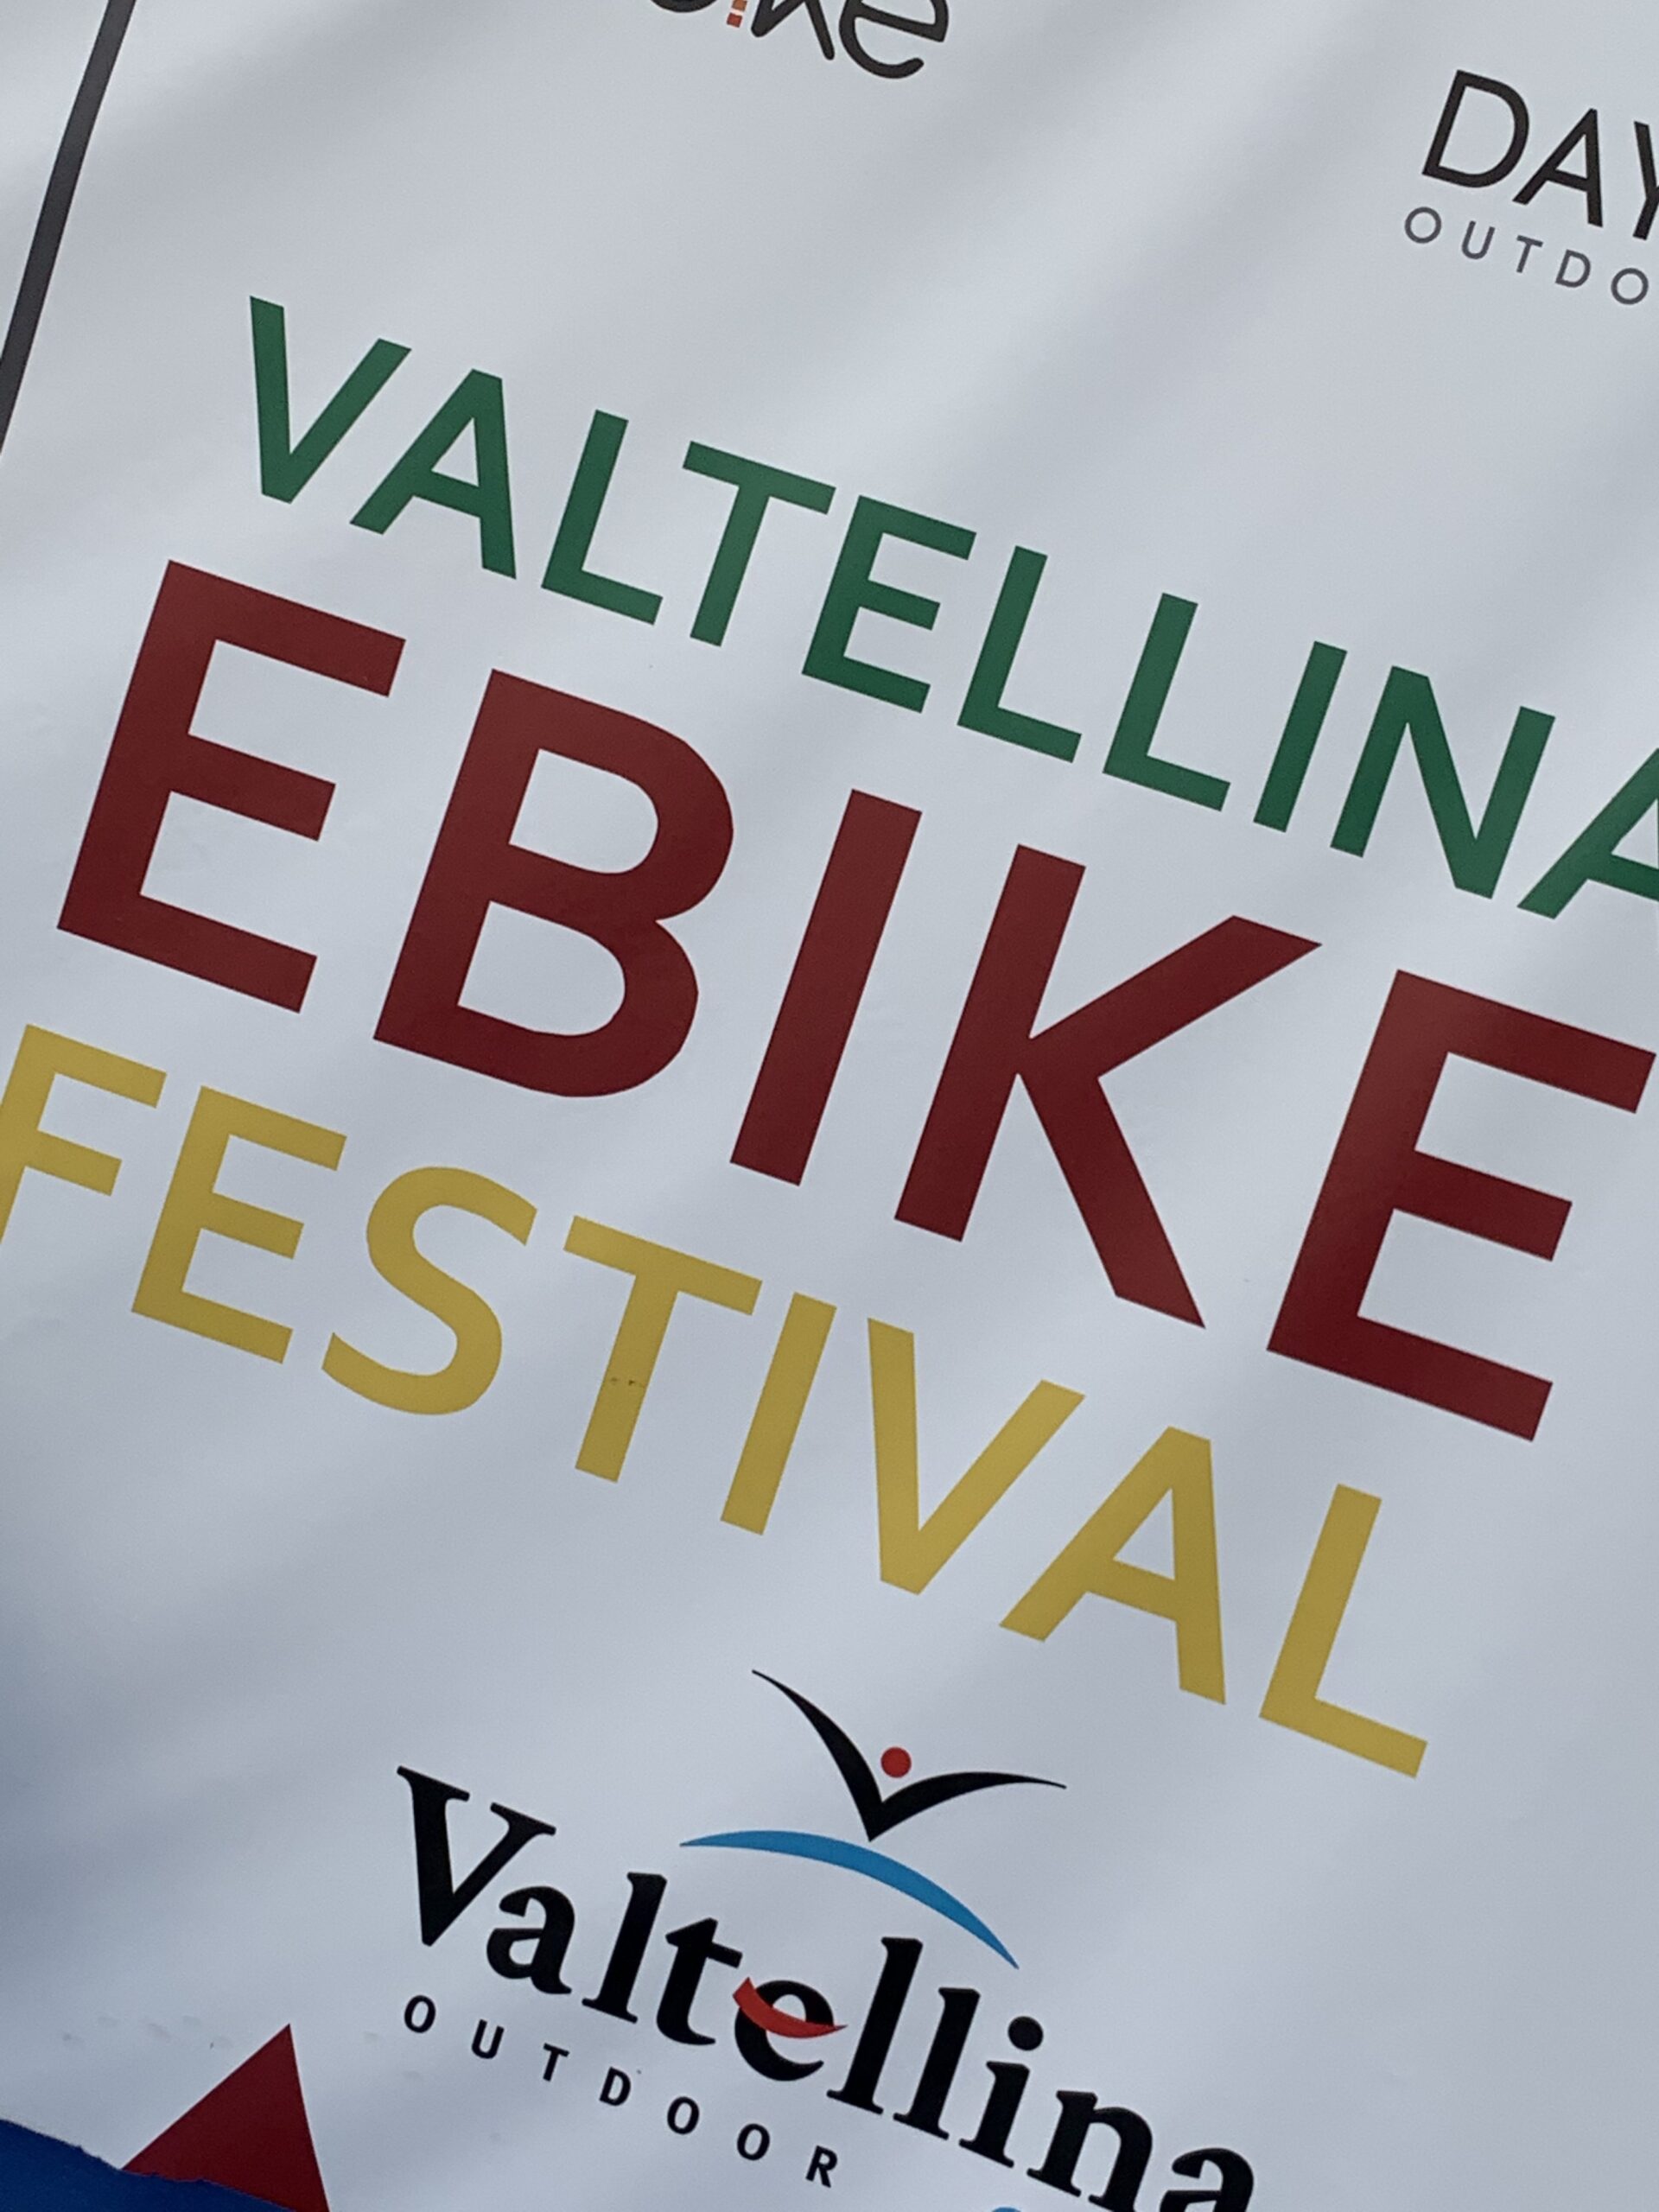 Valtellina E-bike Festival